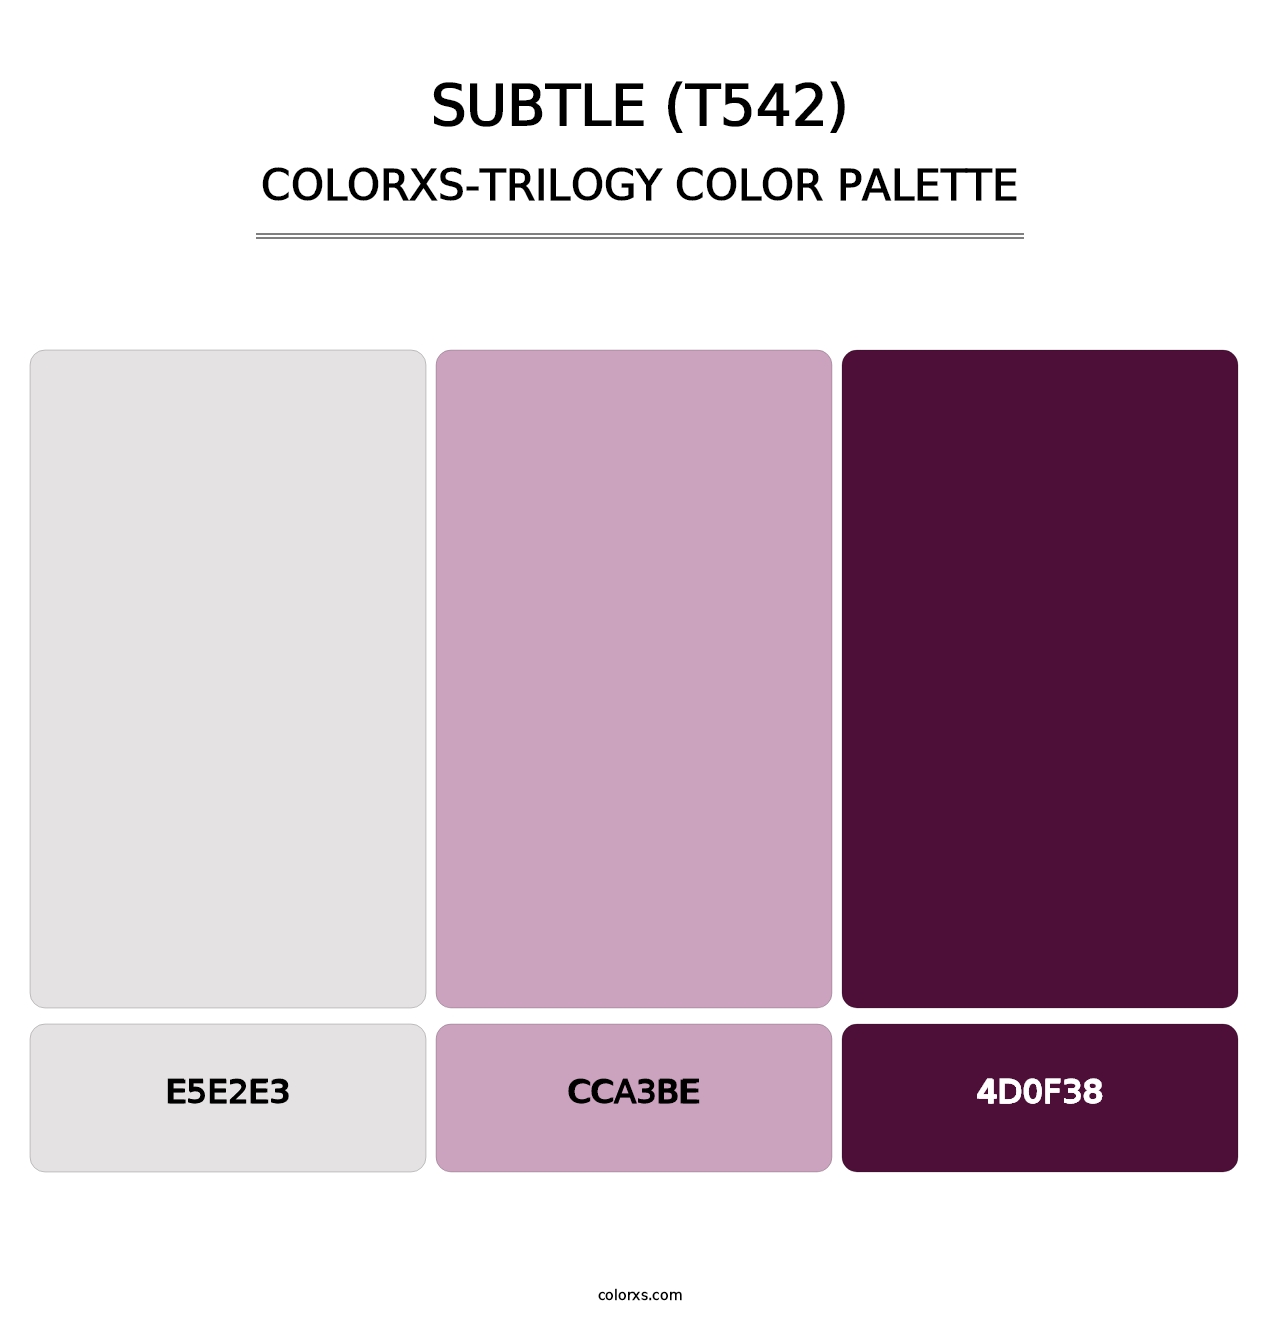 Subtle (T542) - Colorxs Trilogy Palette